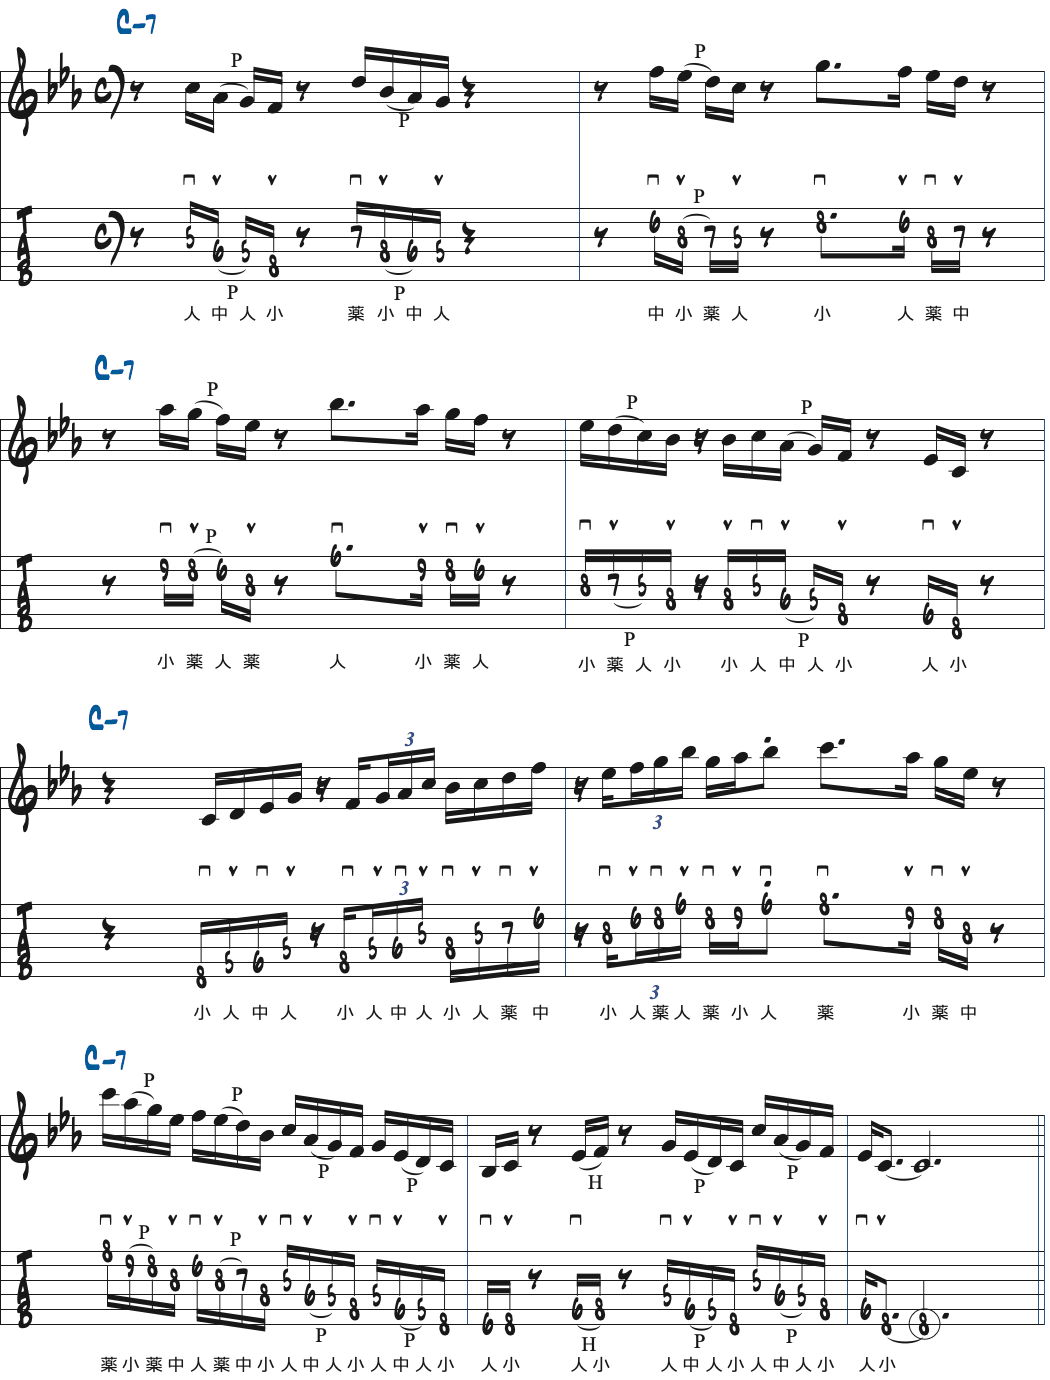 Cナチュラルマイナースケールのモチーフを発展させて弾いた楽譜